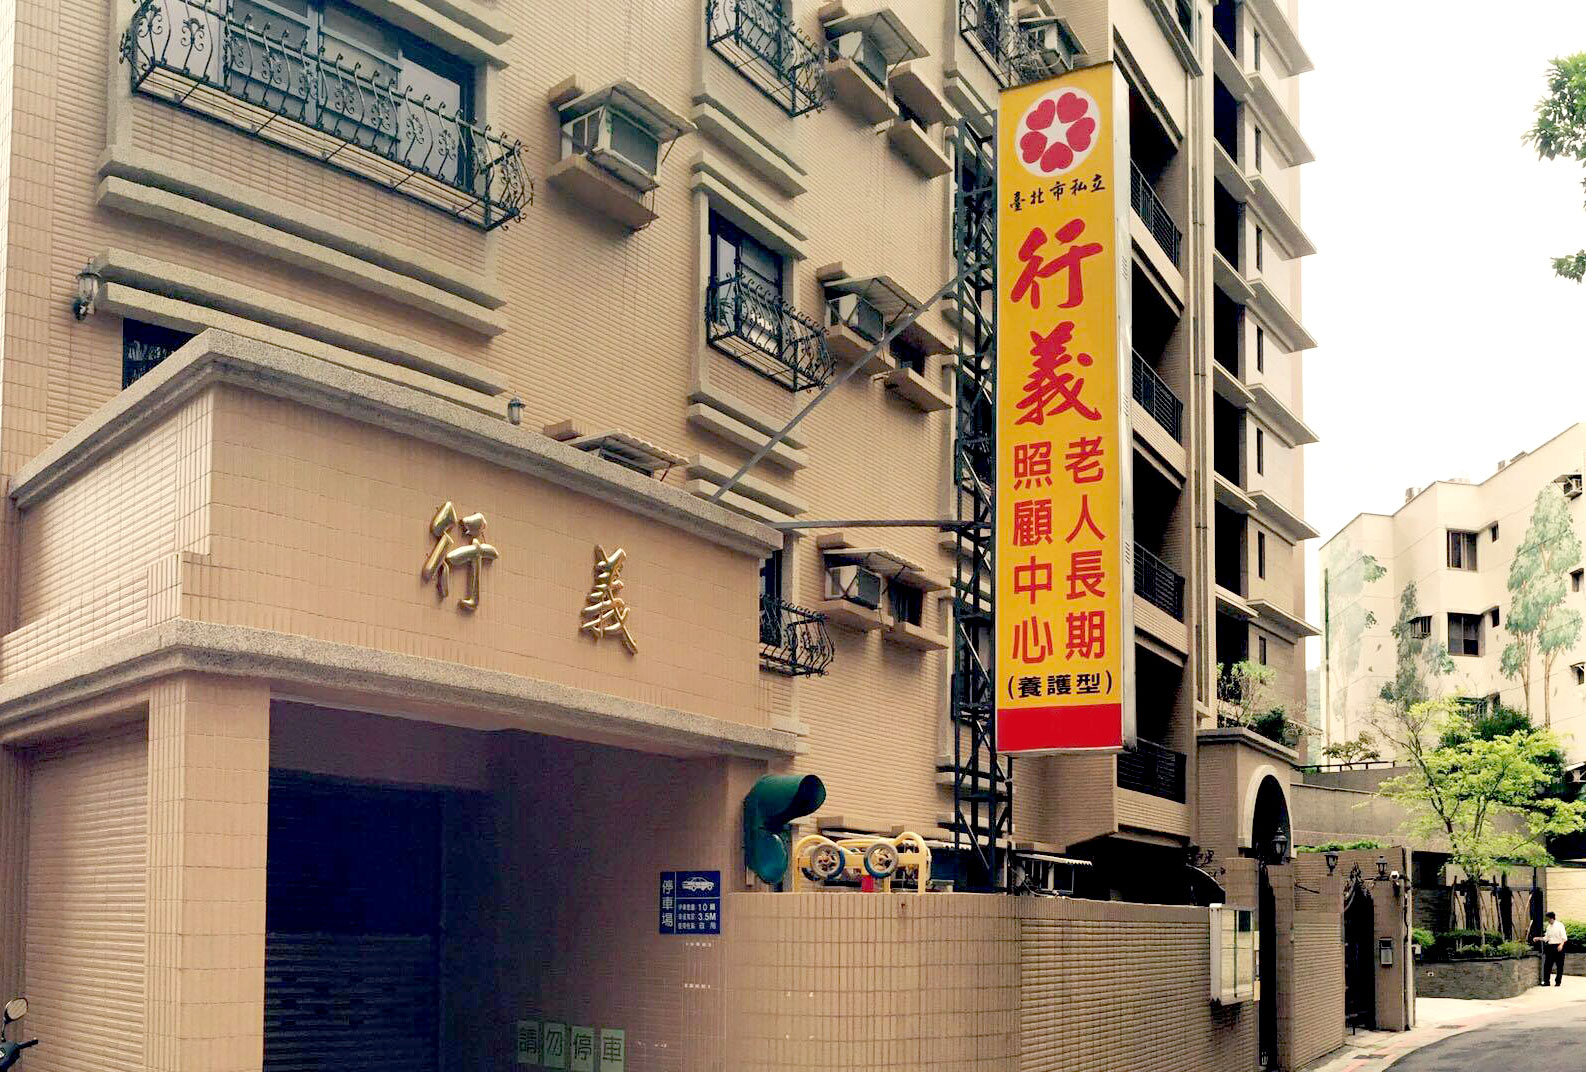 臺北市私立行義老人長期照顧中心(養護型)